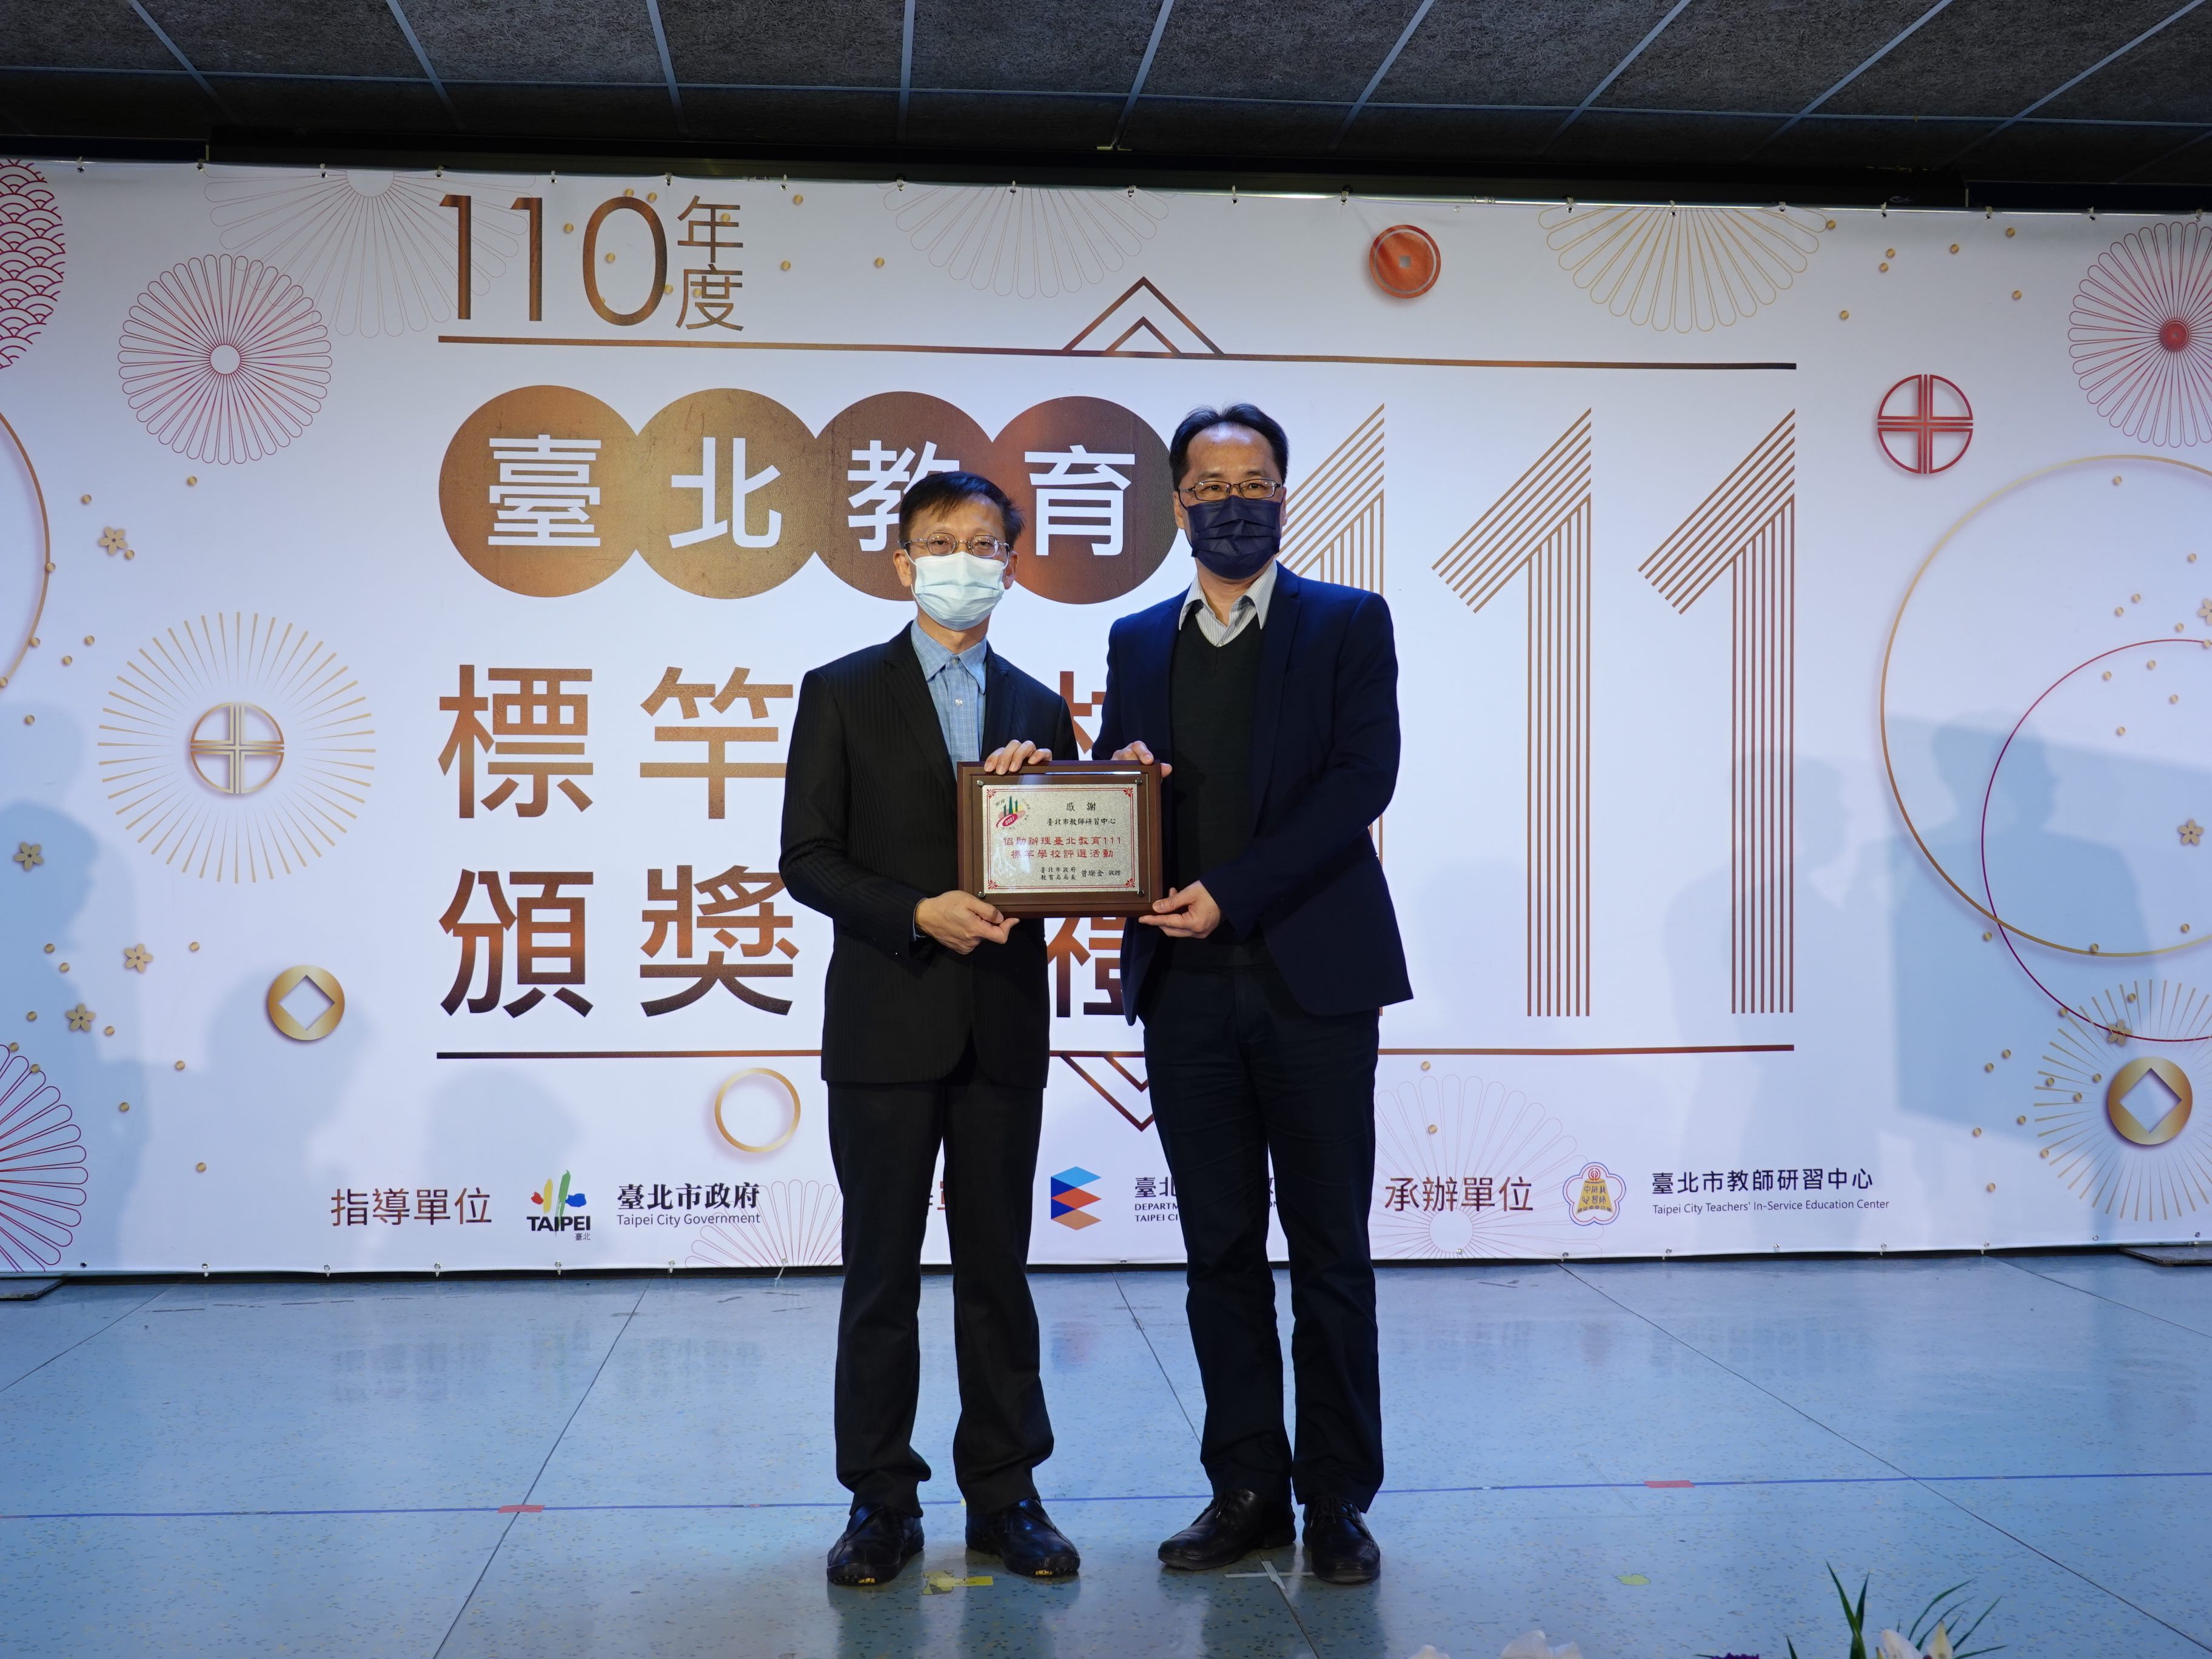 110年度臺北教育 111 標竿學校頒獎典禮